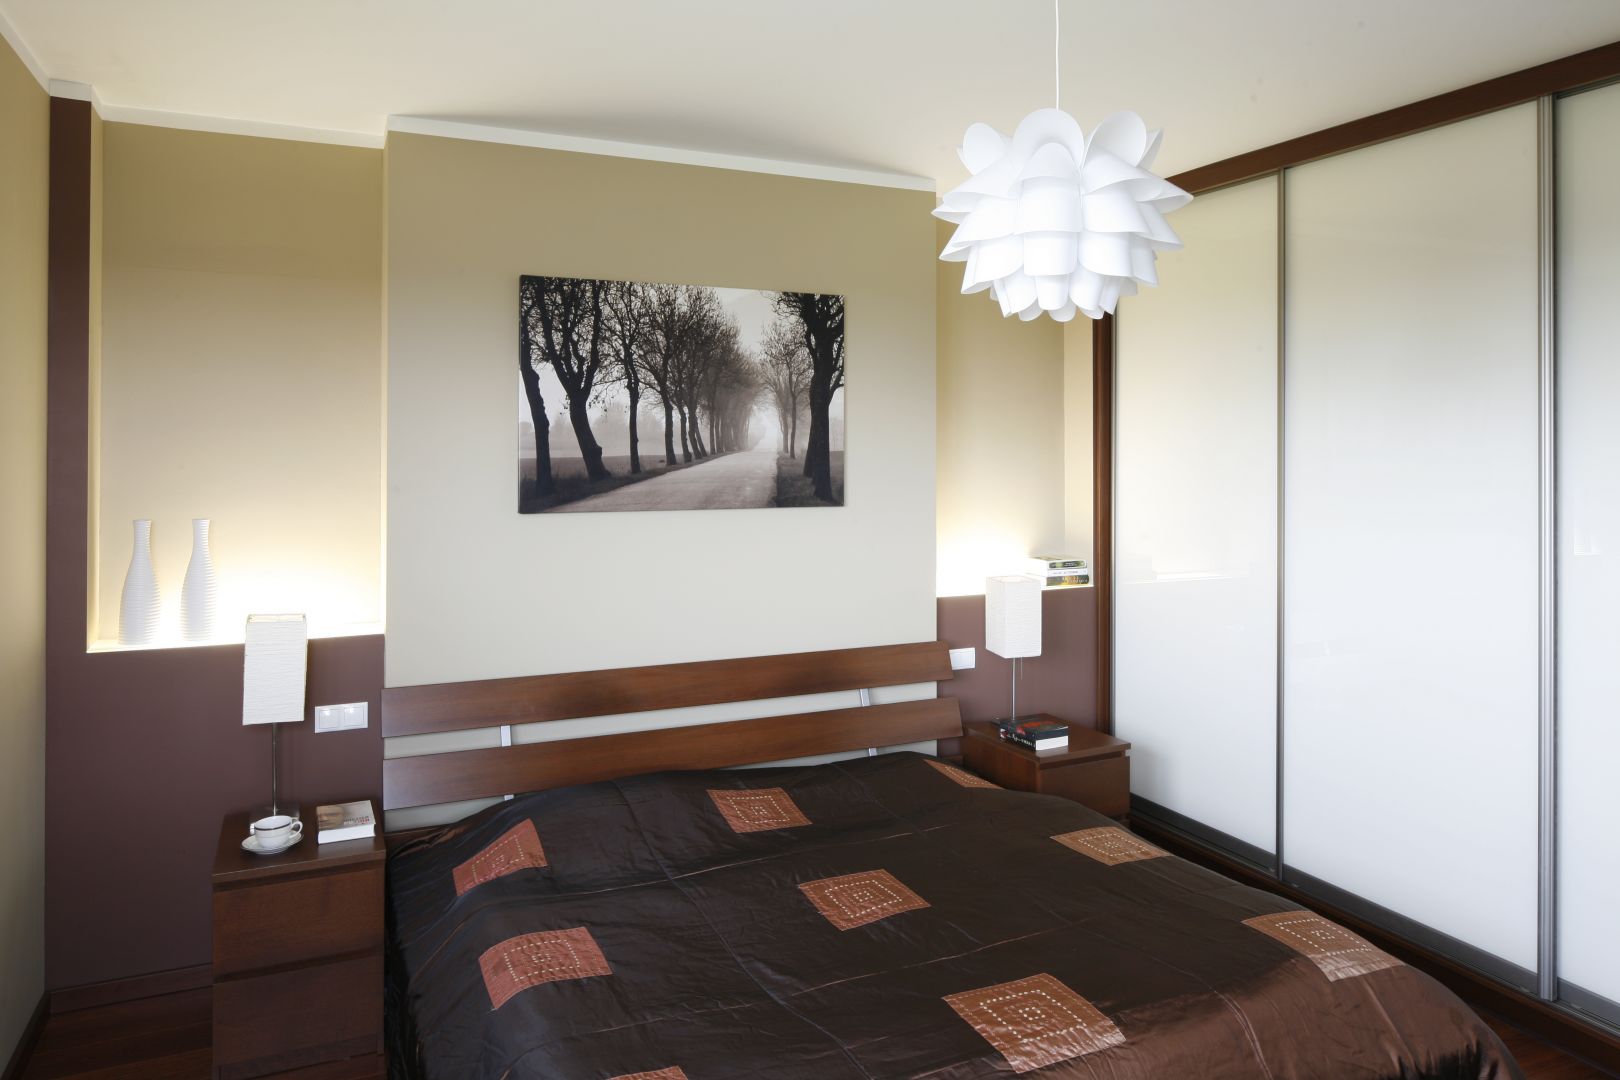 Przestrzenny obraz nad łóżkiem wizualnie powiększa wnętrze. Łóżko z dekoracyjnym, drewnianym zagłówkiem zapewnia komfort wypoczynku. Projekt: Piotr Stanisz. Fot. Bartosz Jarosz 